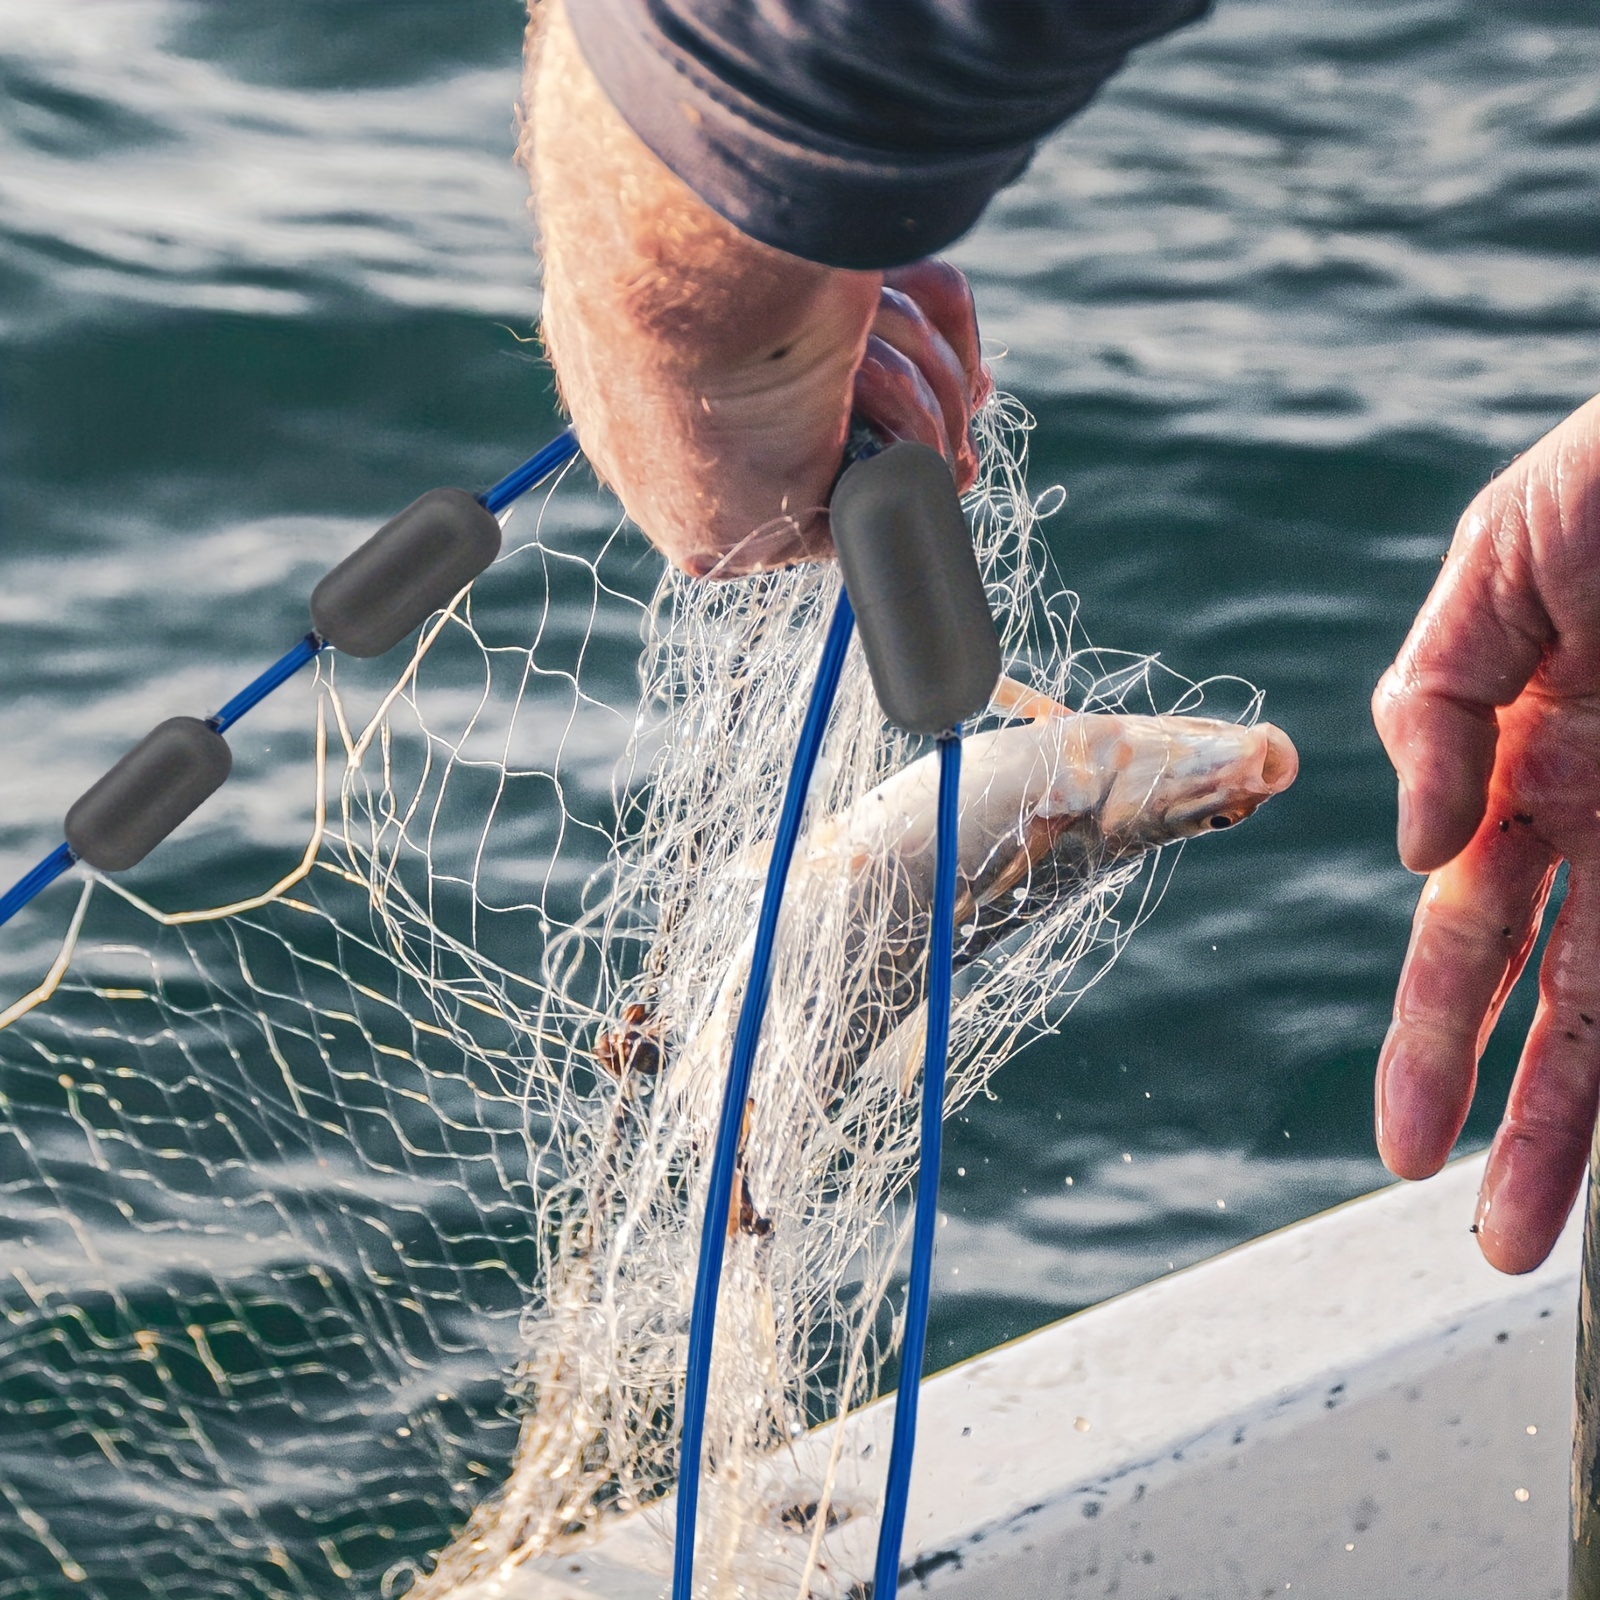 * 1pc Throw Fishing Cast Net For Bait Fishing, Sinker Fish Net, Radius Size  4FT/5FT/6FT/7FT/8FT (121.92cm/152.4cm/182.88cm/213.36cm/243.84cm)